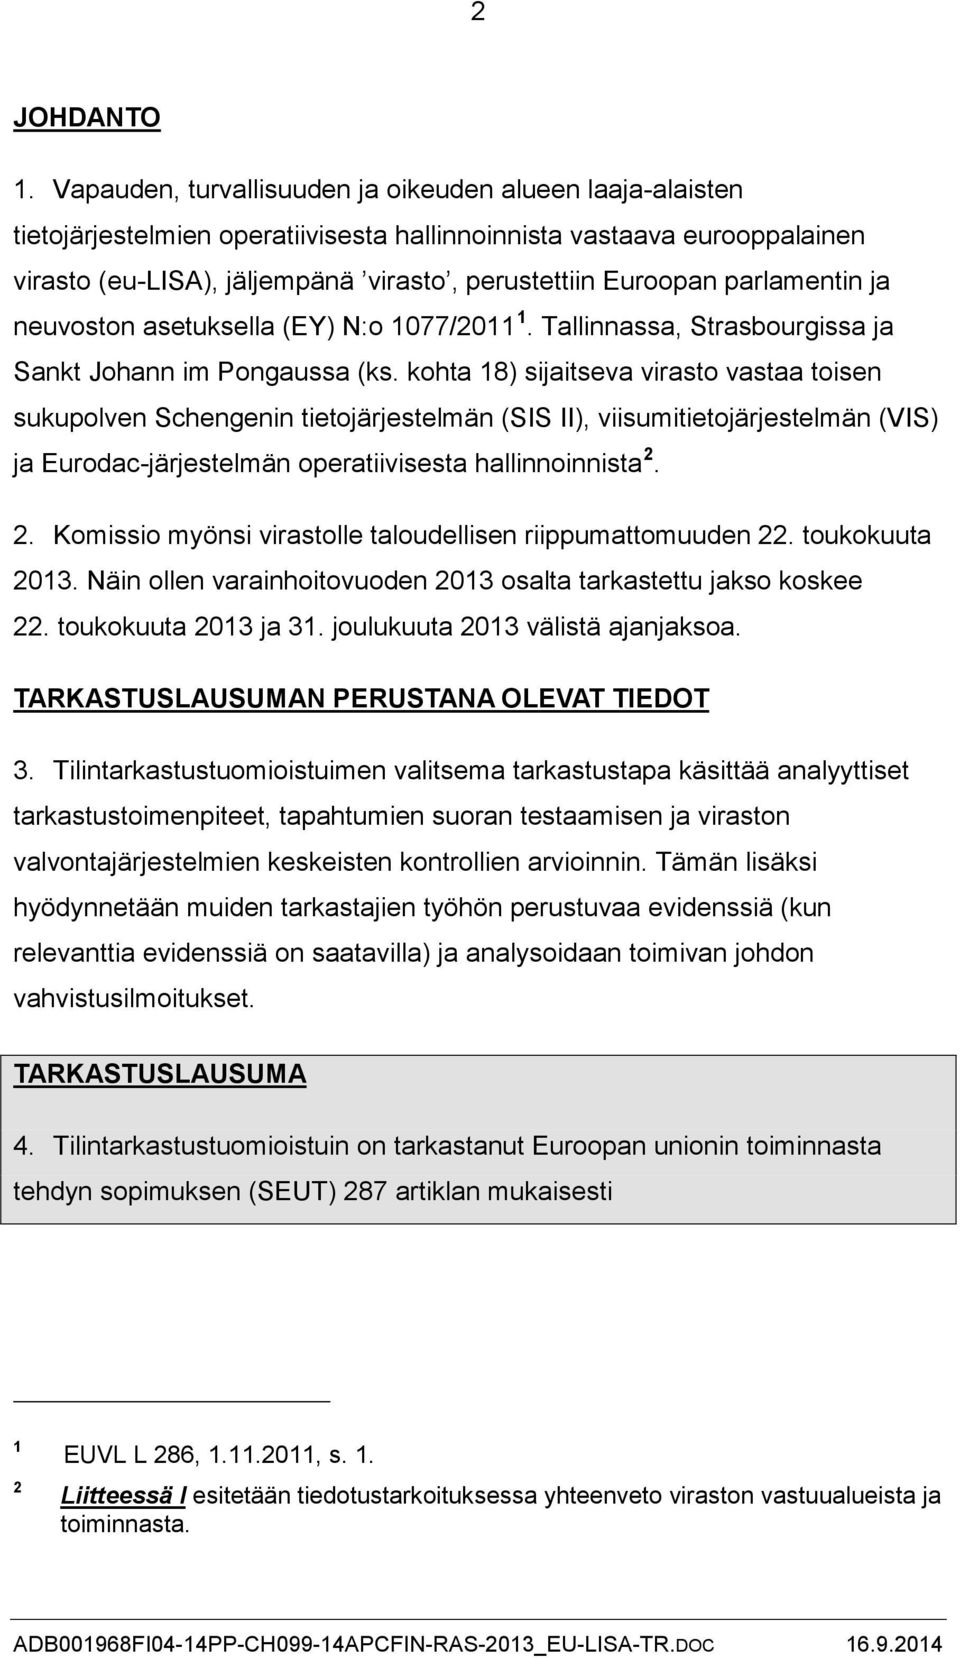 parlamentin ja neuvoston asetuksella (EY) N:o 1077/2011 1. Tallinnassa, Strasbourgissa ja Sankt Johann im Pongaussa (ks.